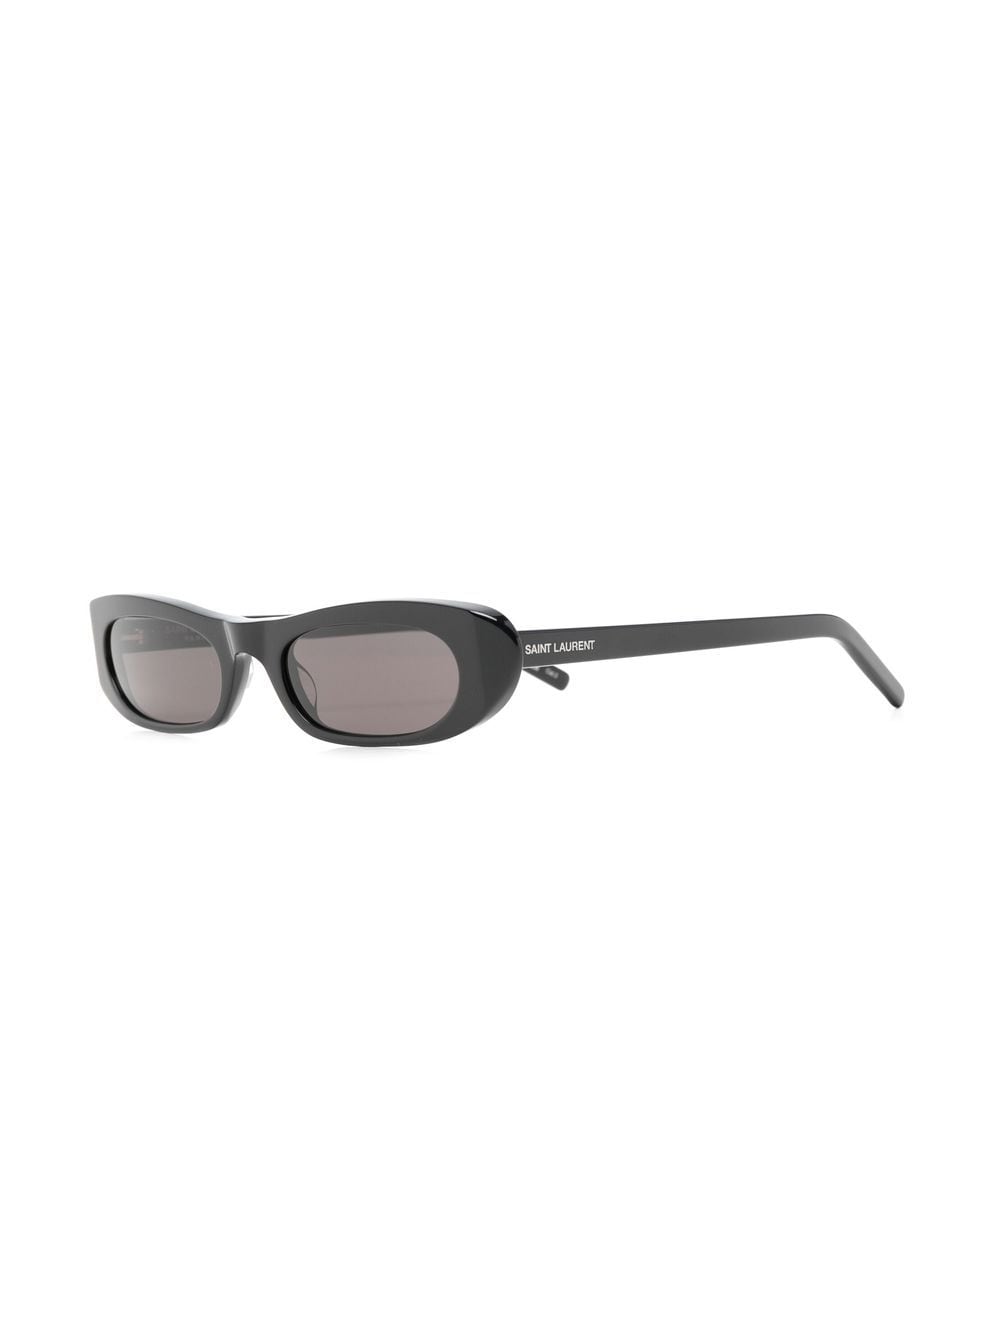 Saint Laurent Eyewear Black Oval Frame zonnebril met ovaal montuur - Zwart